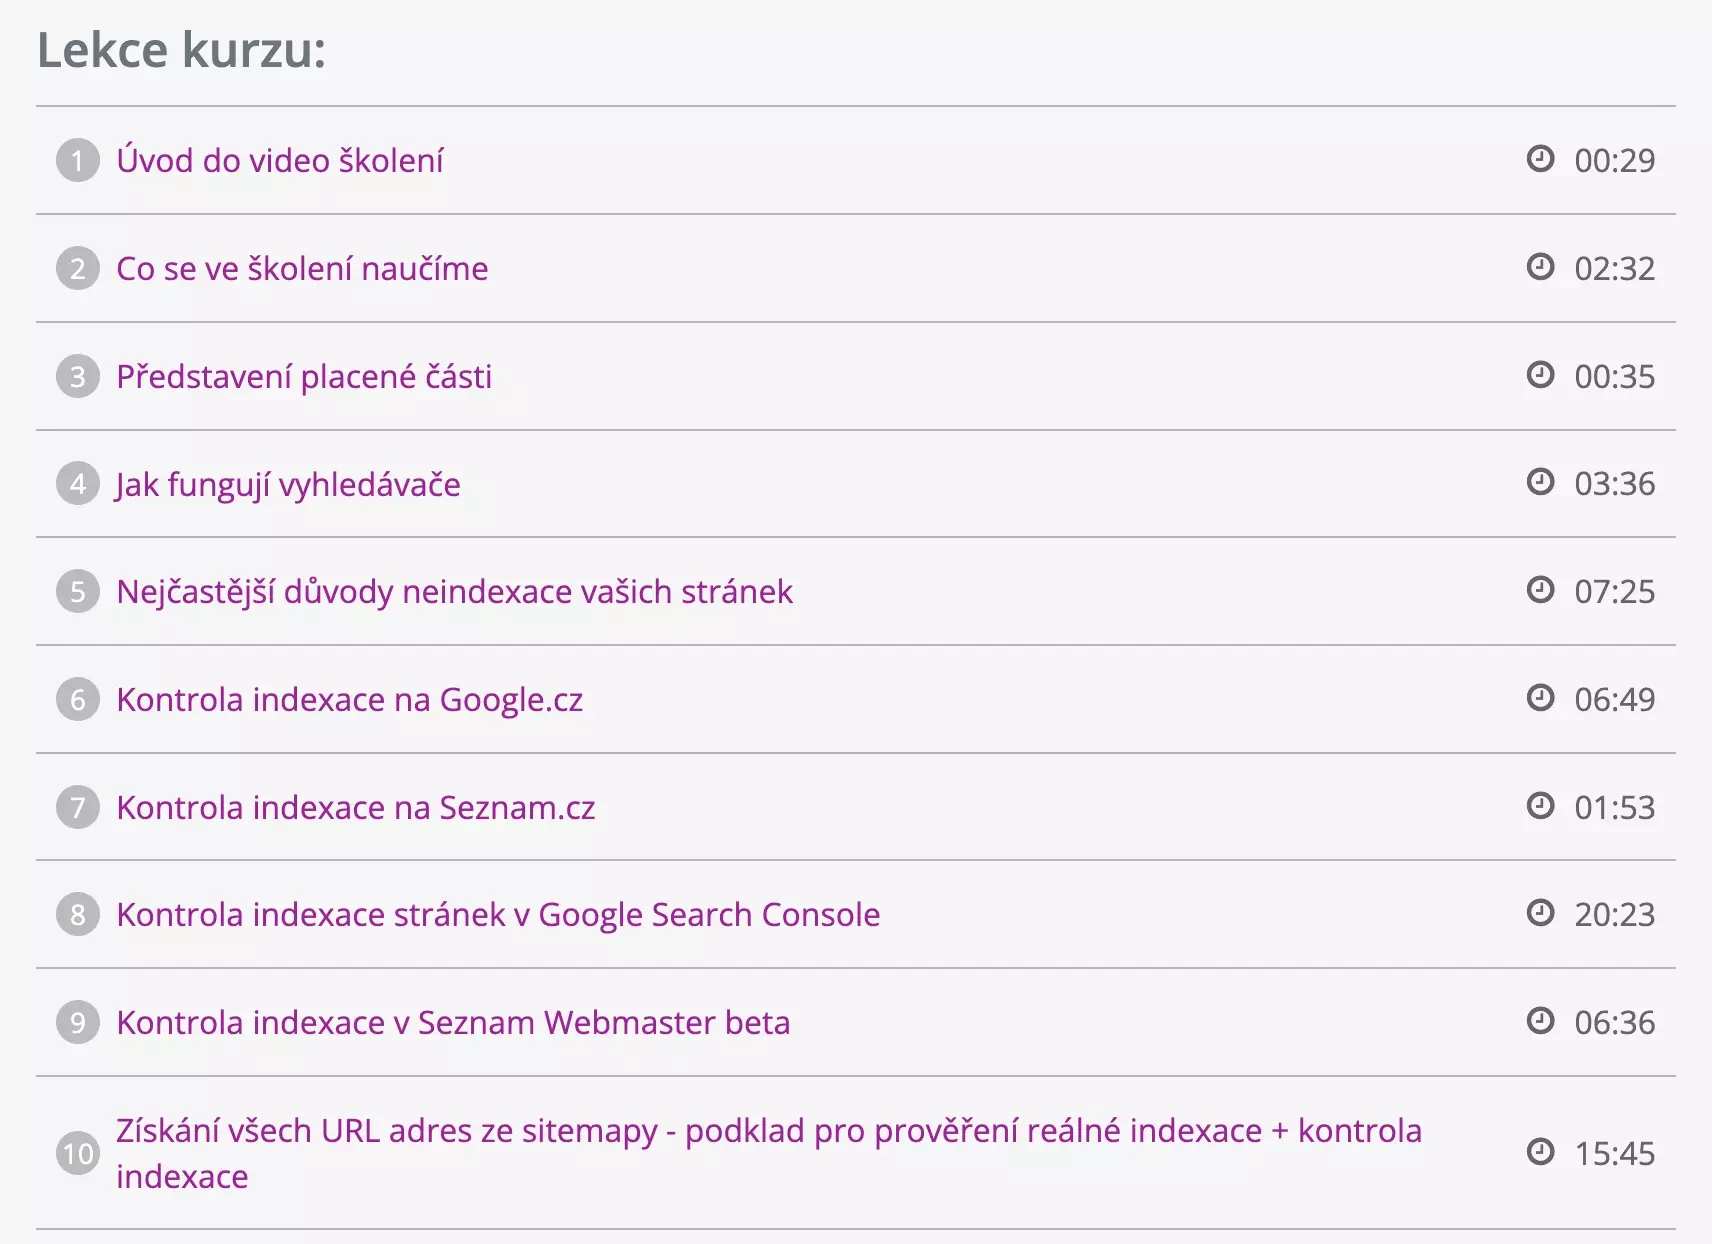 Michal Binka: Kurz SEO: Audit a analýza reálné indexace vašeho webu